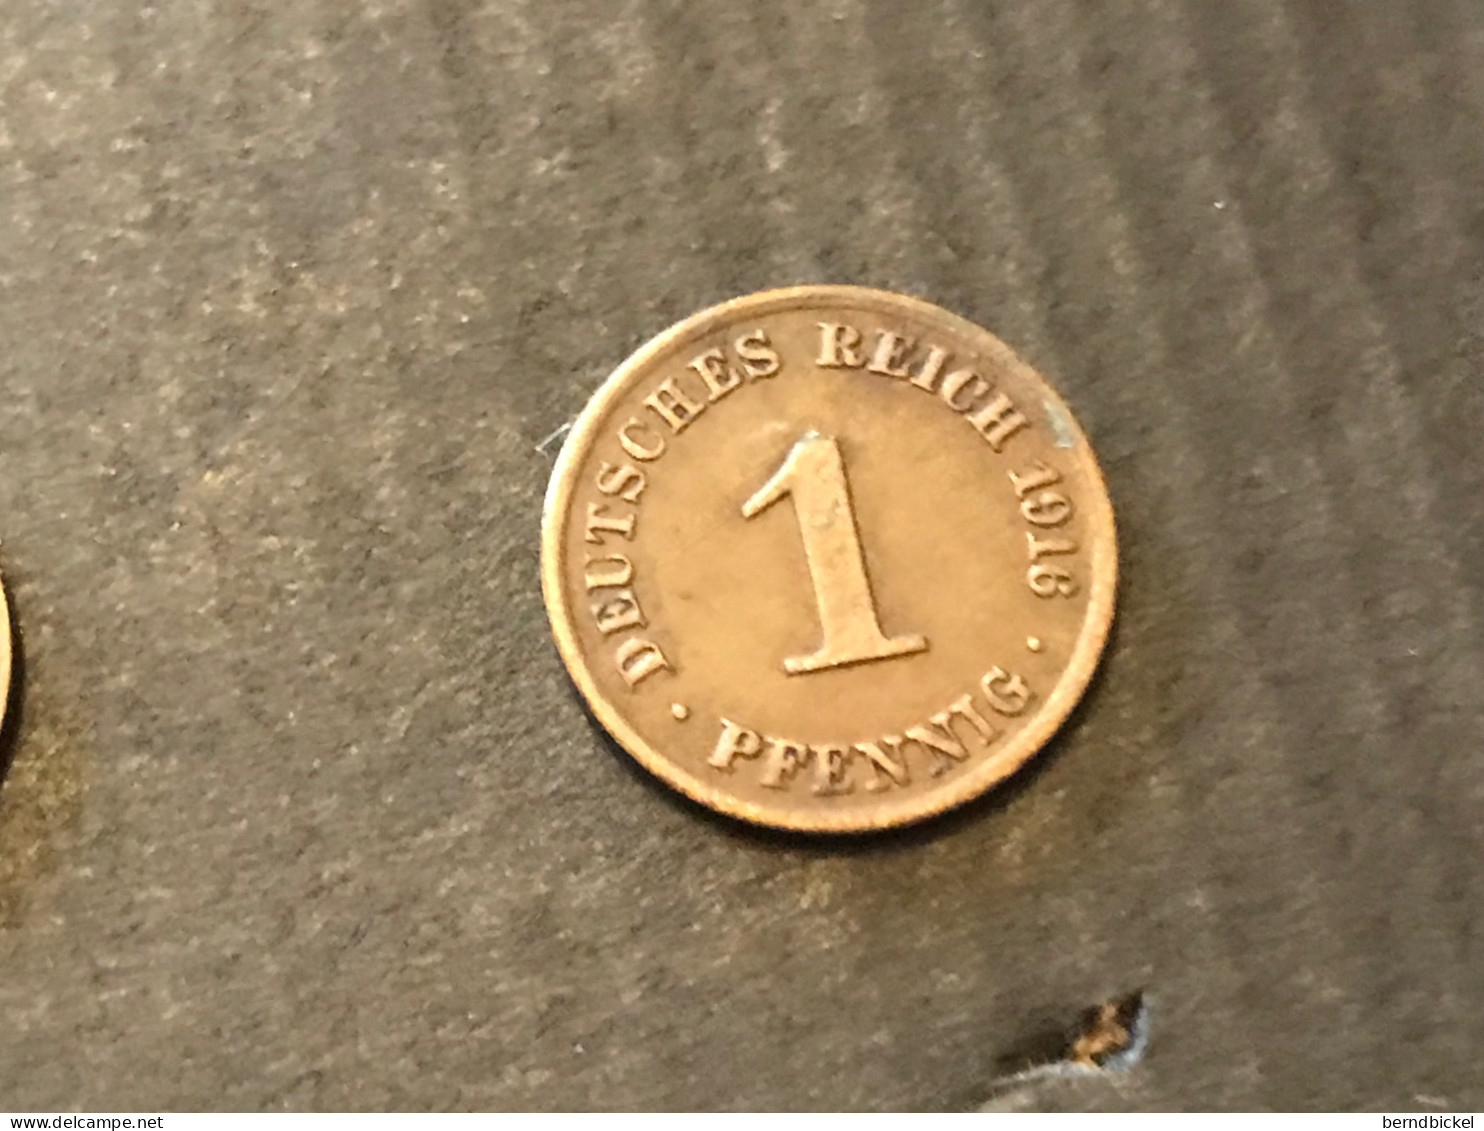 Münze Münzen Umlaufmünze Deutschland Kaiserreich 1 Pfennig 1916 Münzzeichen A - 1 Pfennig